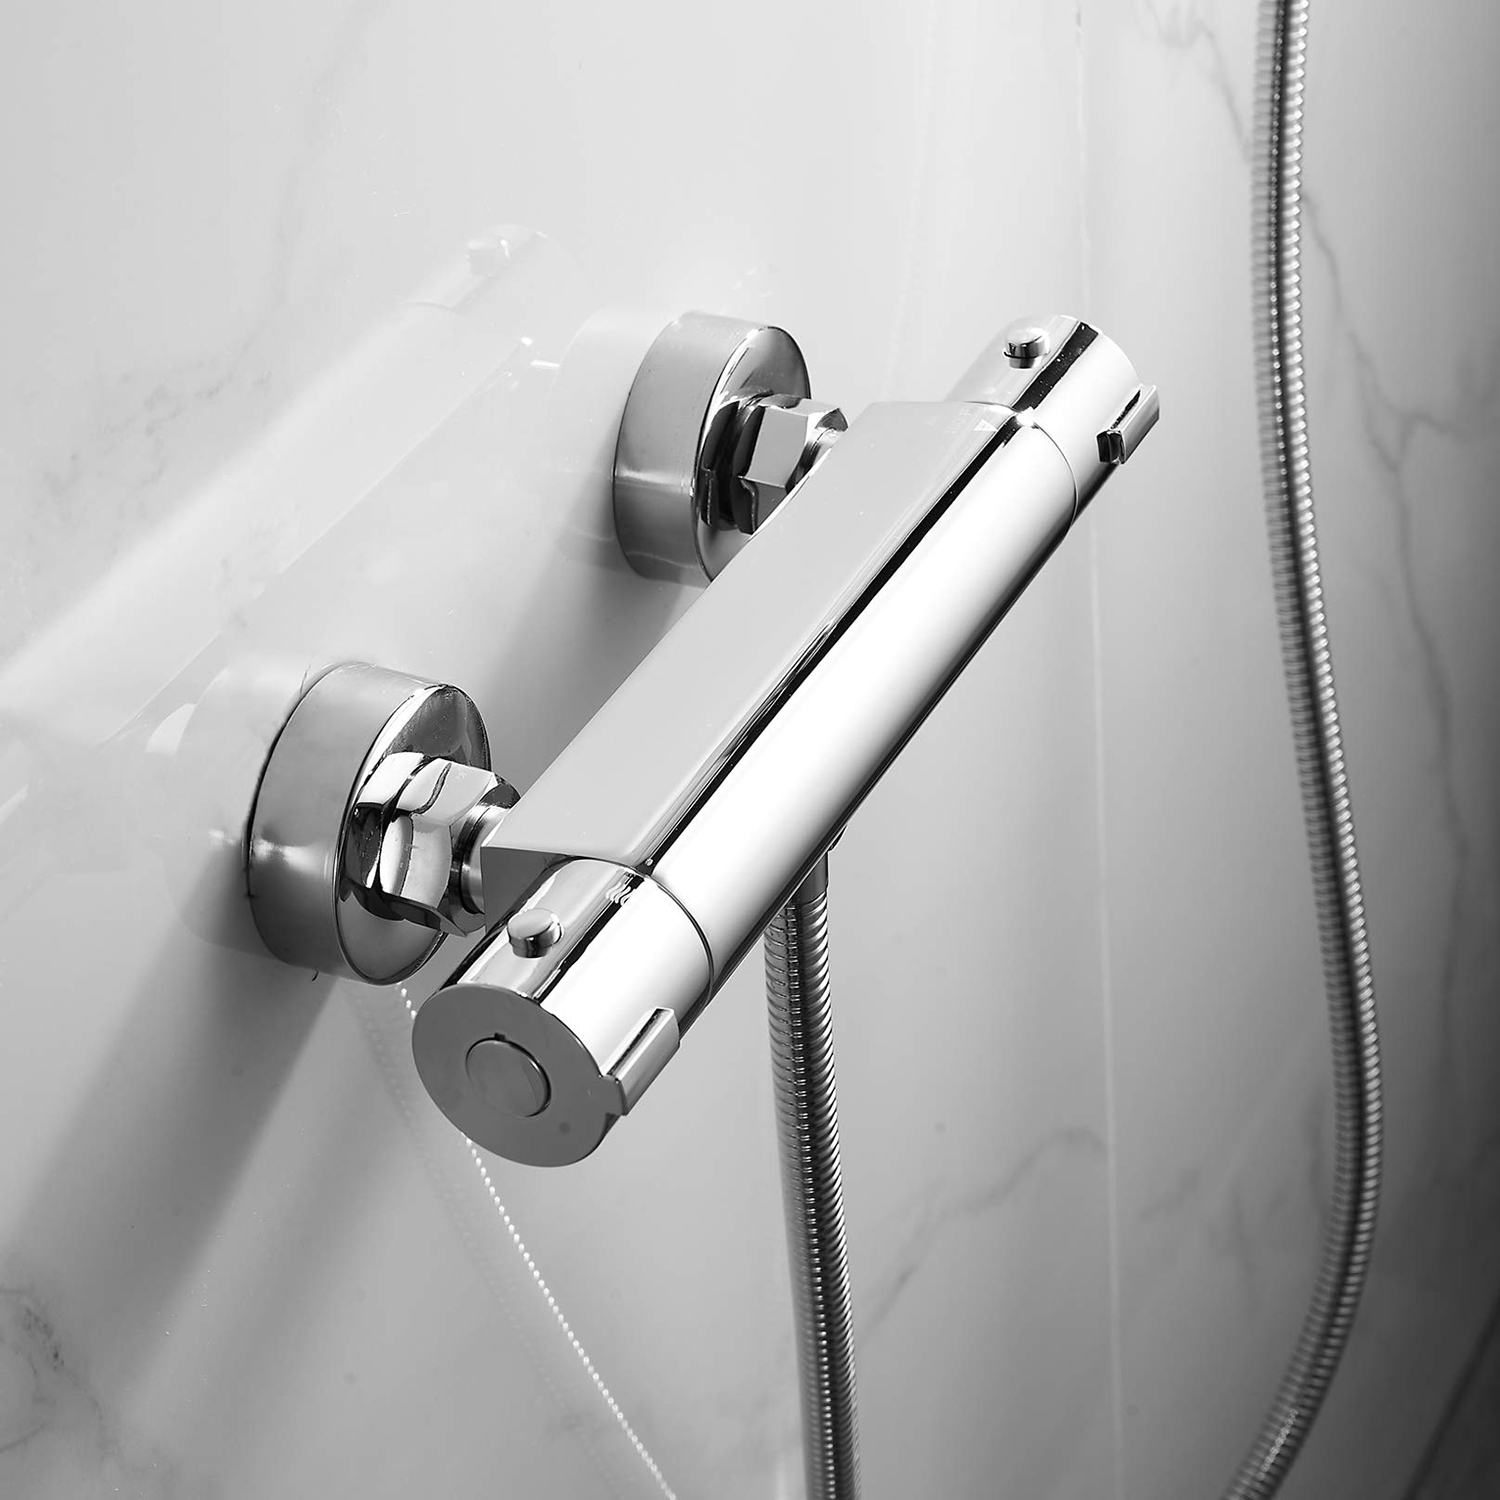 Miscelatore termostatico per barra doccia moderna per la casa, rubinetti cromati per bagno, doppia uscita